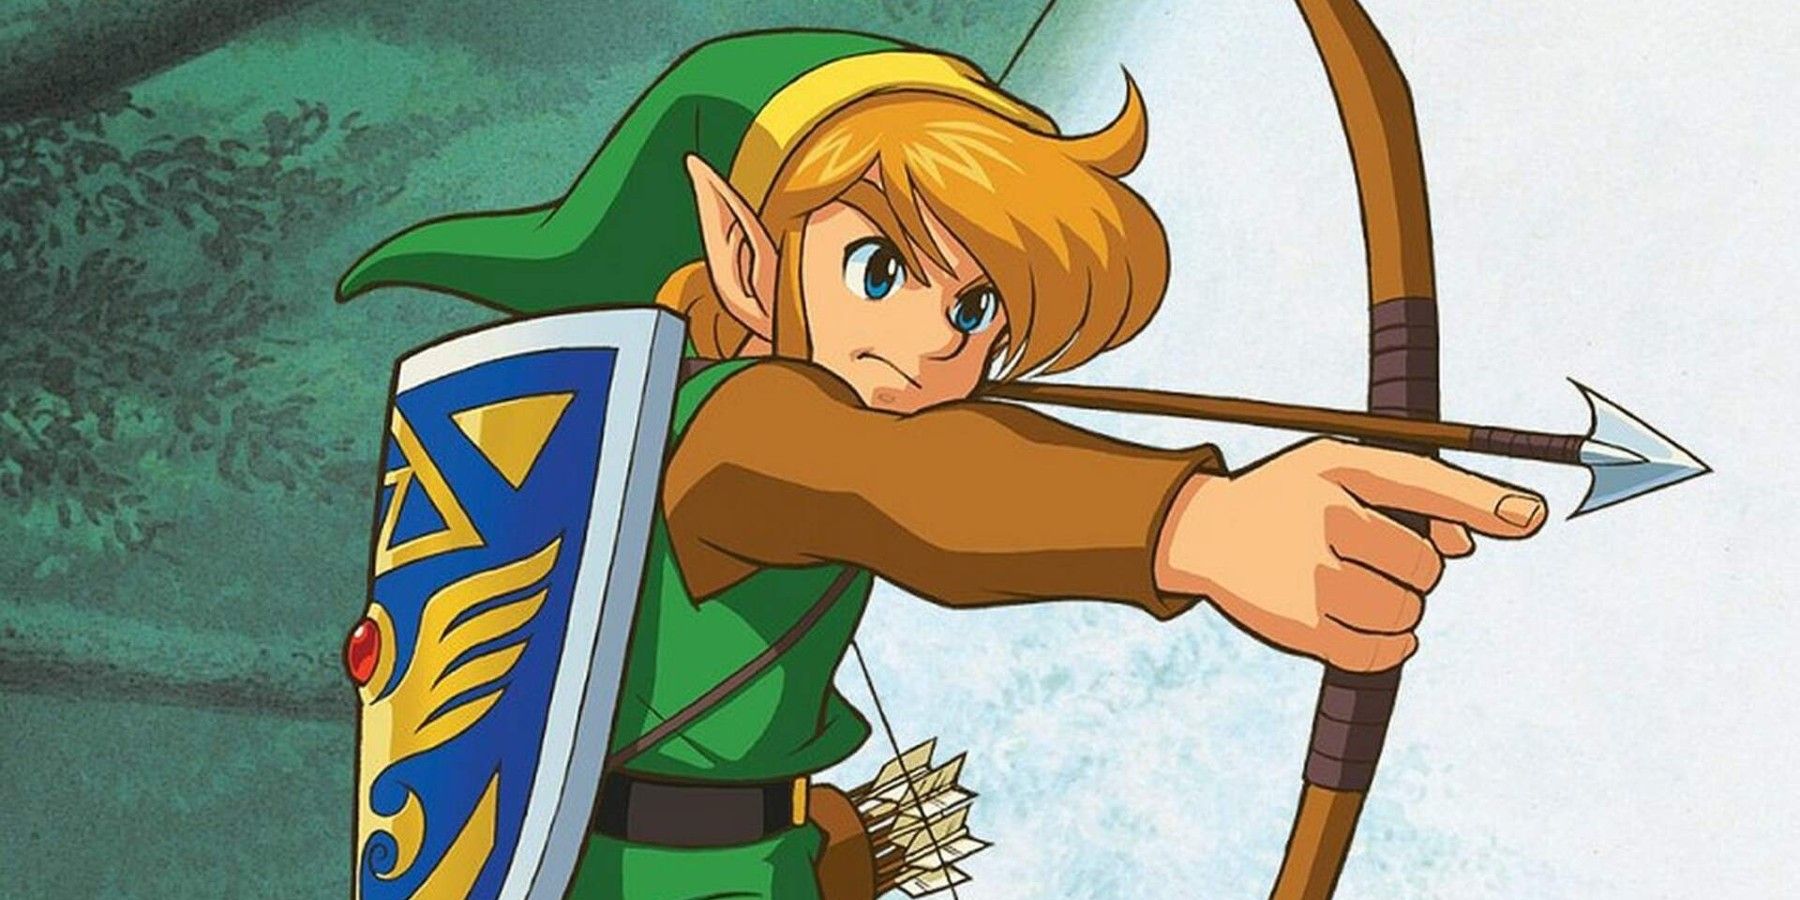 Zelda A Link to the Past Fan демонстрирует невероятную вышивку крестиком карты мира